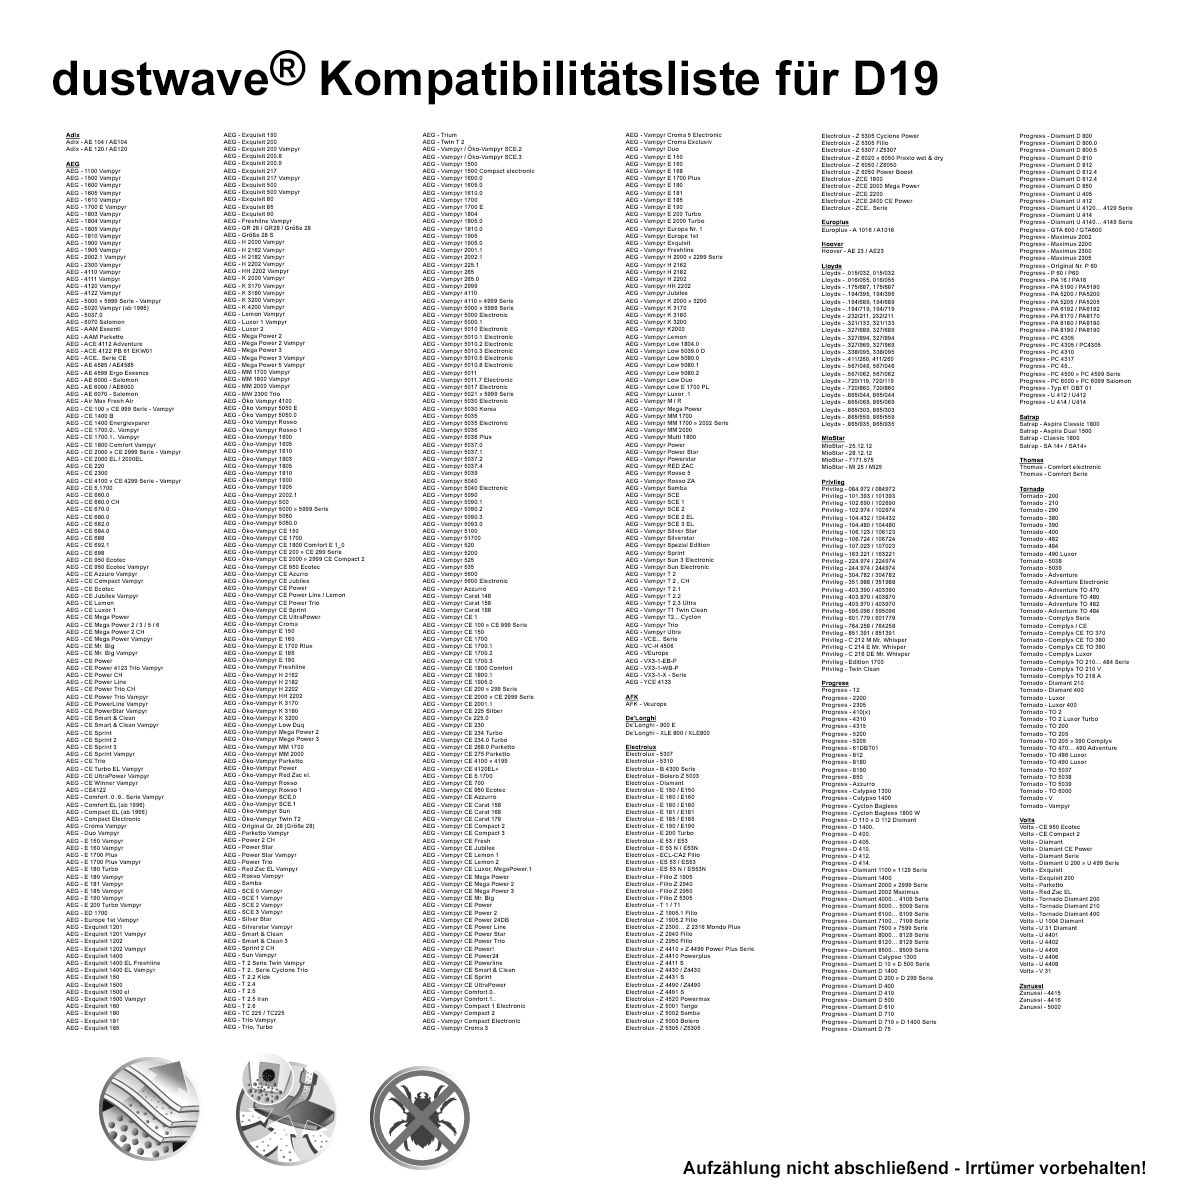 Dustwave® 10 Staubsaugerbeutel für AEG Vampyr Power / Powerstar - hocheffizient, mehrlagiges Mikrovlies mit Hygieneverschluss - Made in Germany